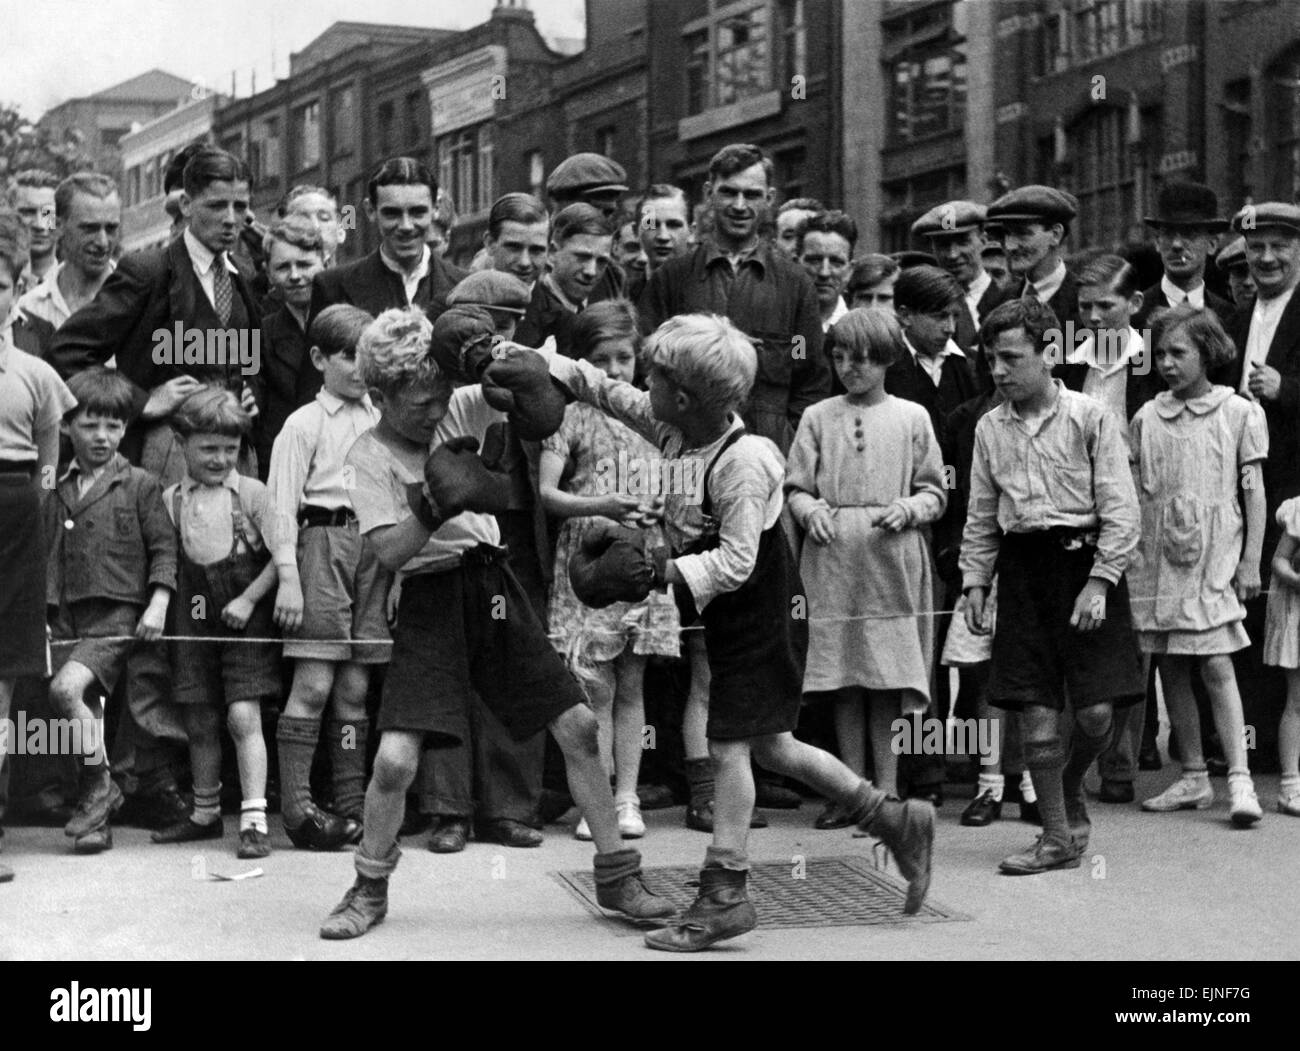 Match de boxe dans la rue à Clerkenwell Green, une entreprise de petits garçons a organisé un match de boxe. Ils ont mis en place un anneau avec un cordon. Après les performances dont ils ont collecté de l'argent (pièces) à partir de la grande foule qui a été attiré. Les garçons ont des spectacles de plusieurs combats. Juillet 1936 Banque D'Images